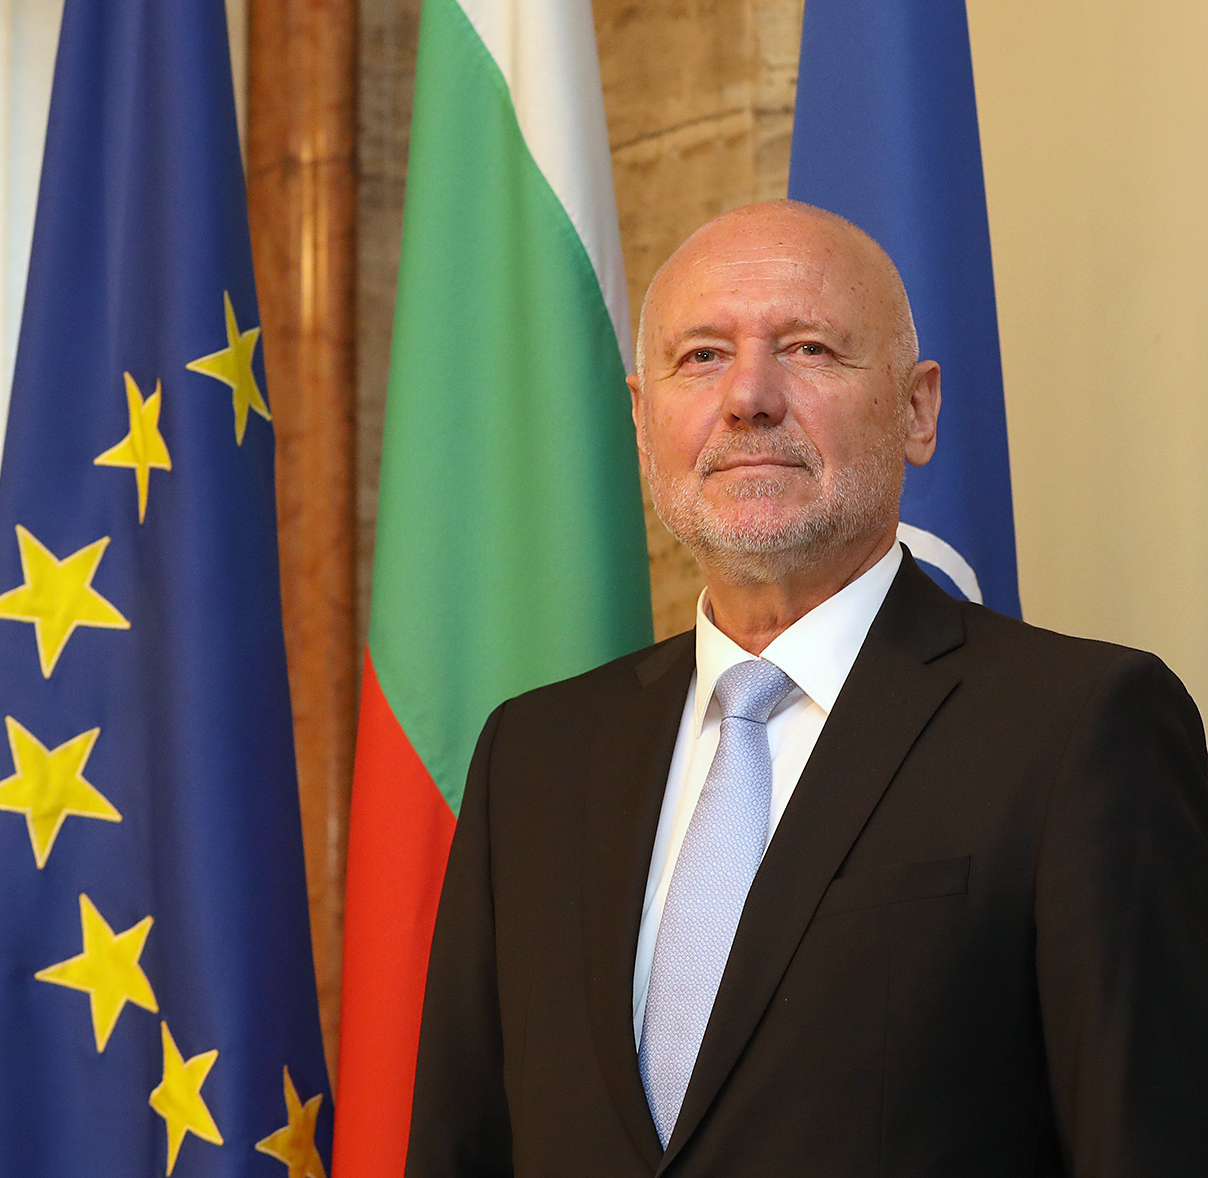 “Bulgaristan’ın yeni füze savunma sistemine ihtiyacı var”